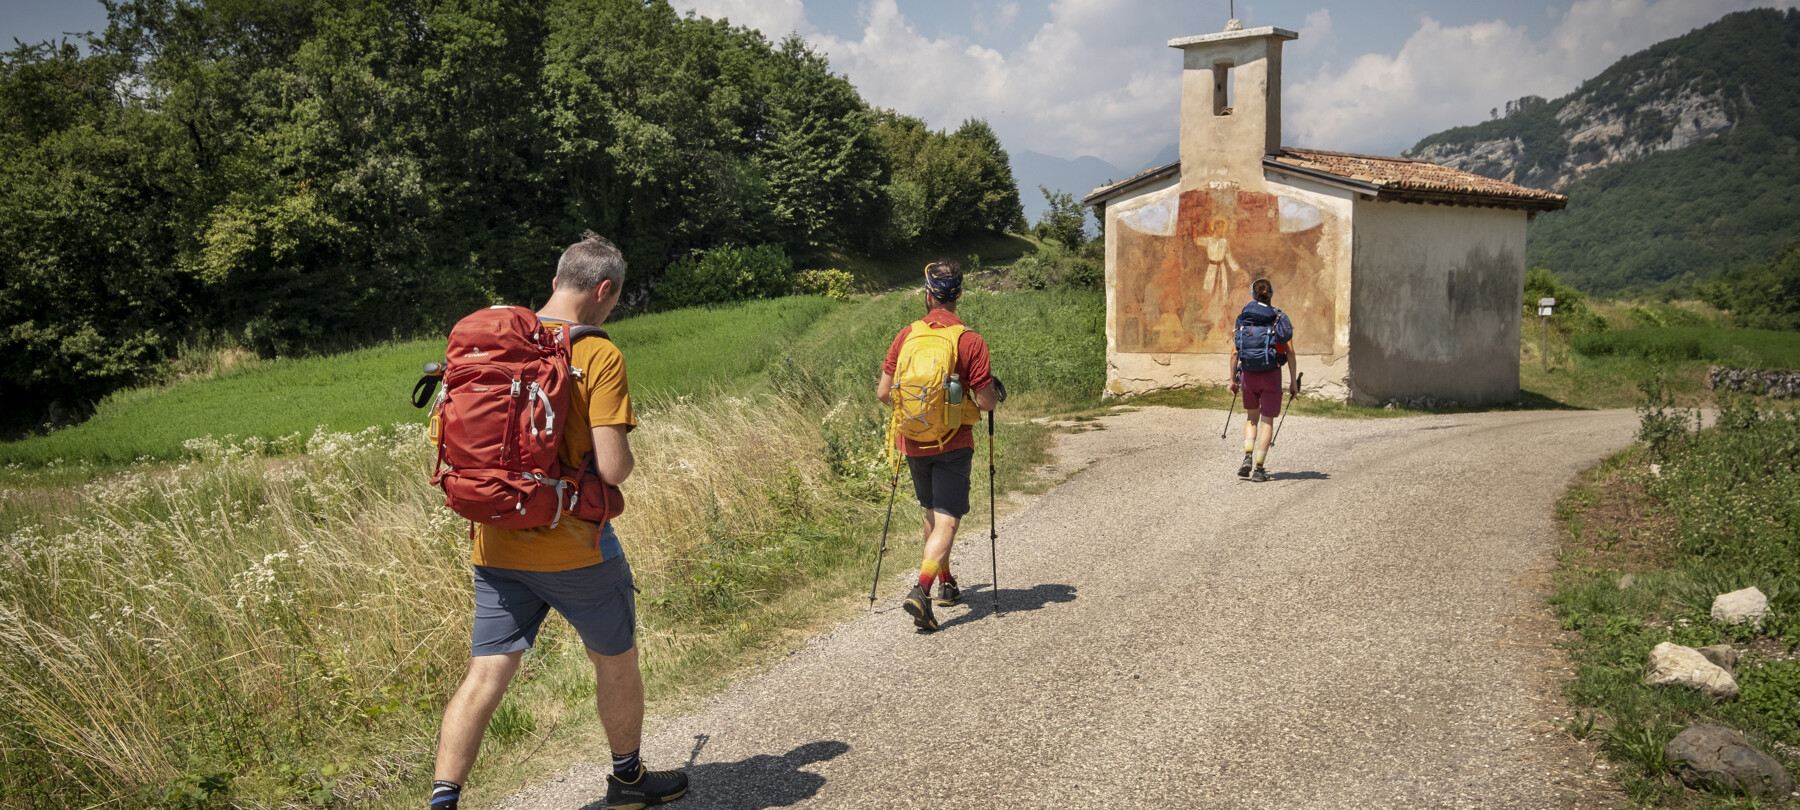 Sentiero della Pace - Path of Peace: Section 4 | Rovereto and Vallagarina 